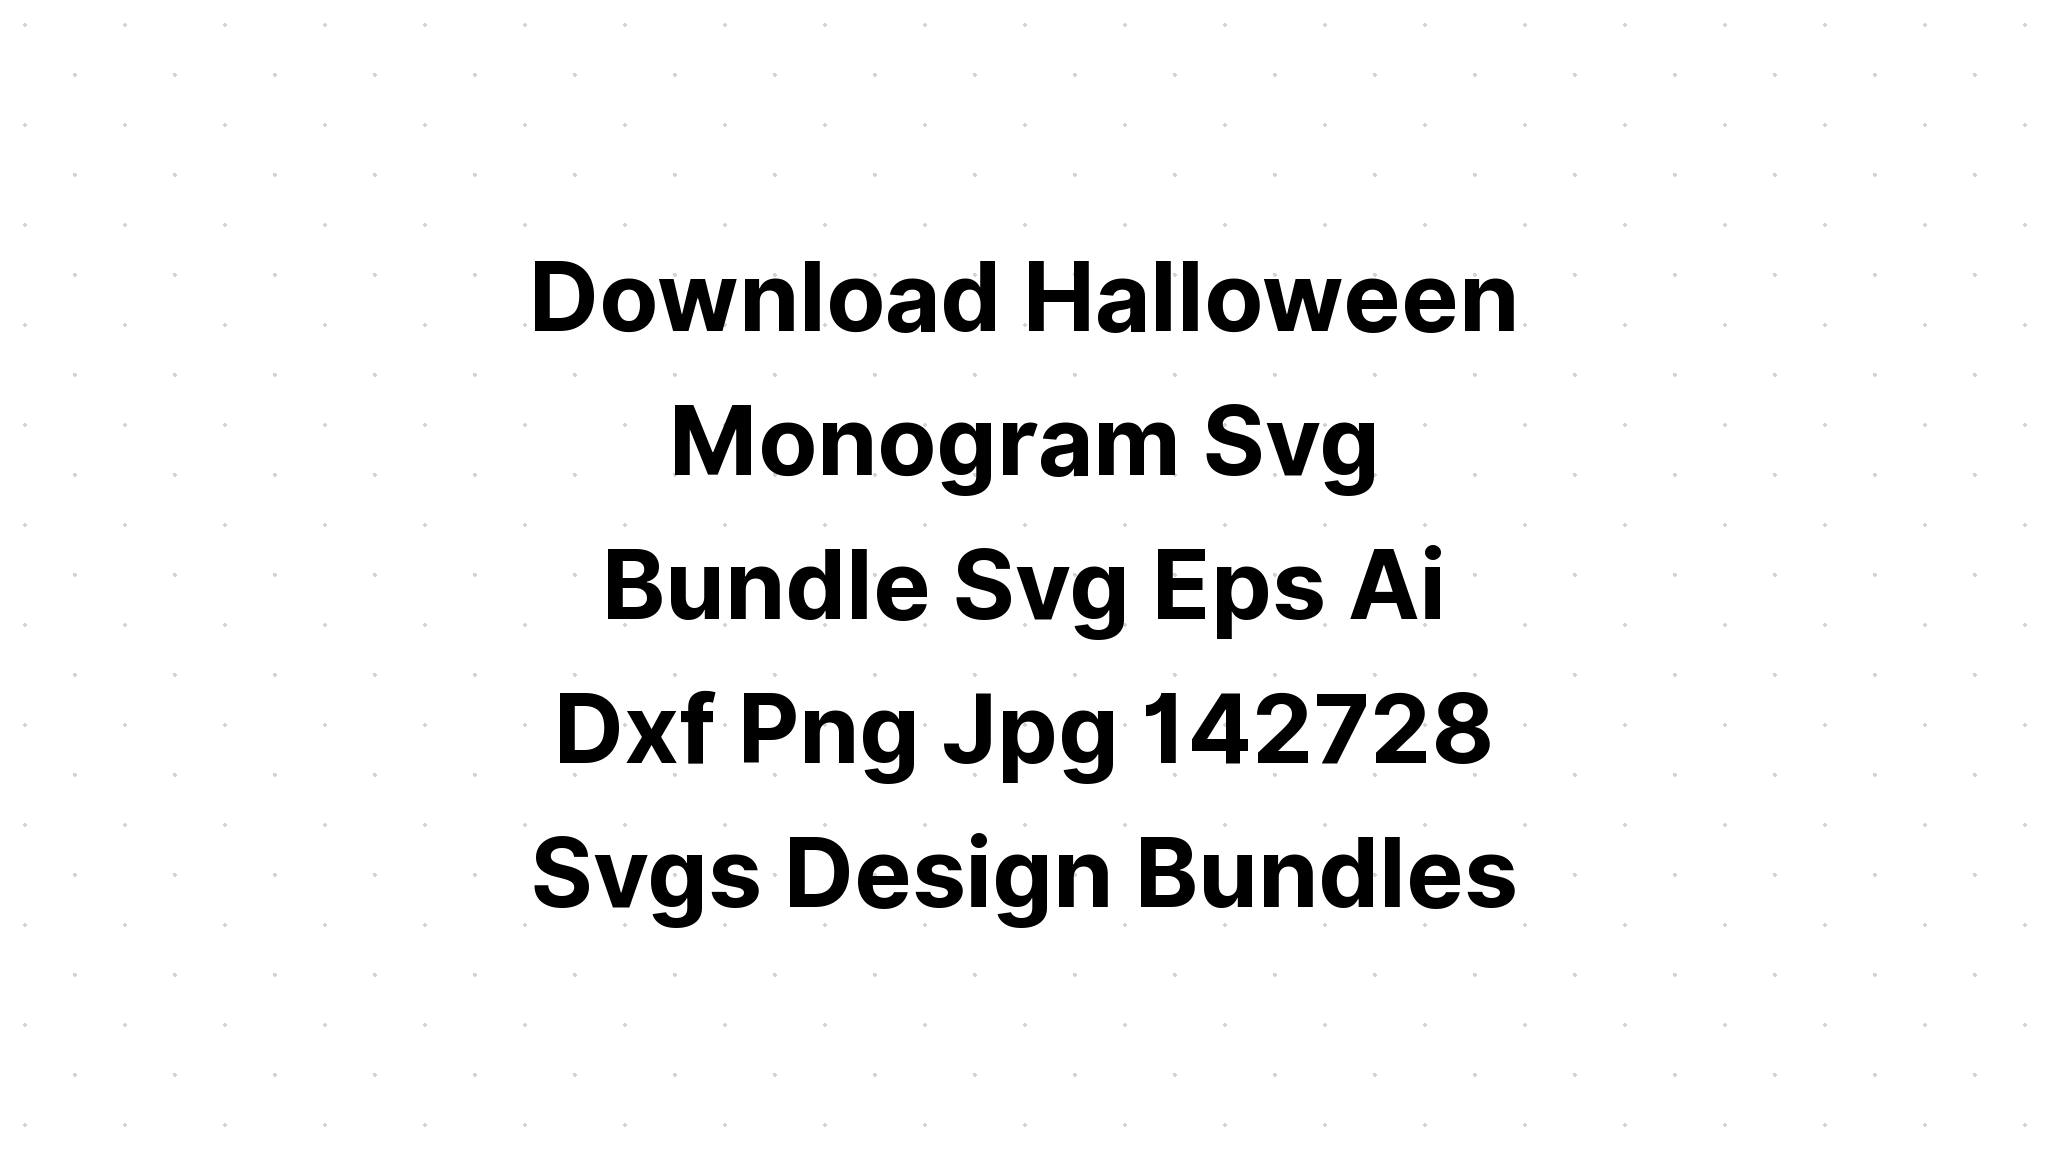 Download Monogram J Svg - Layered SVG Cut File